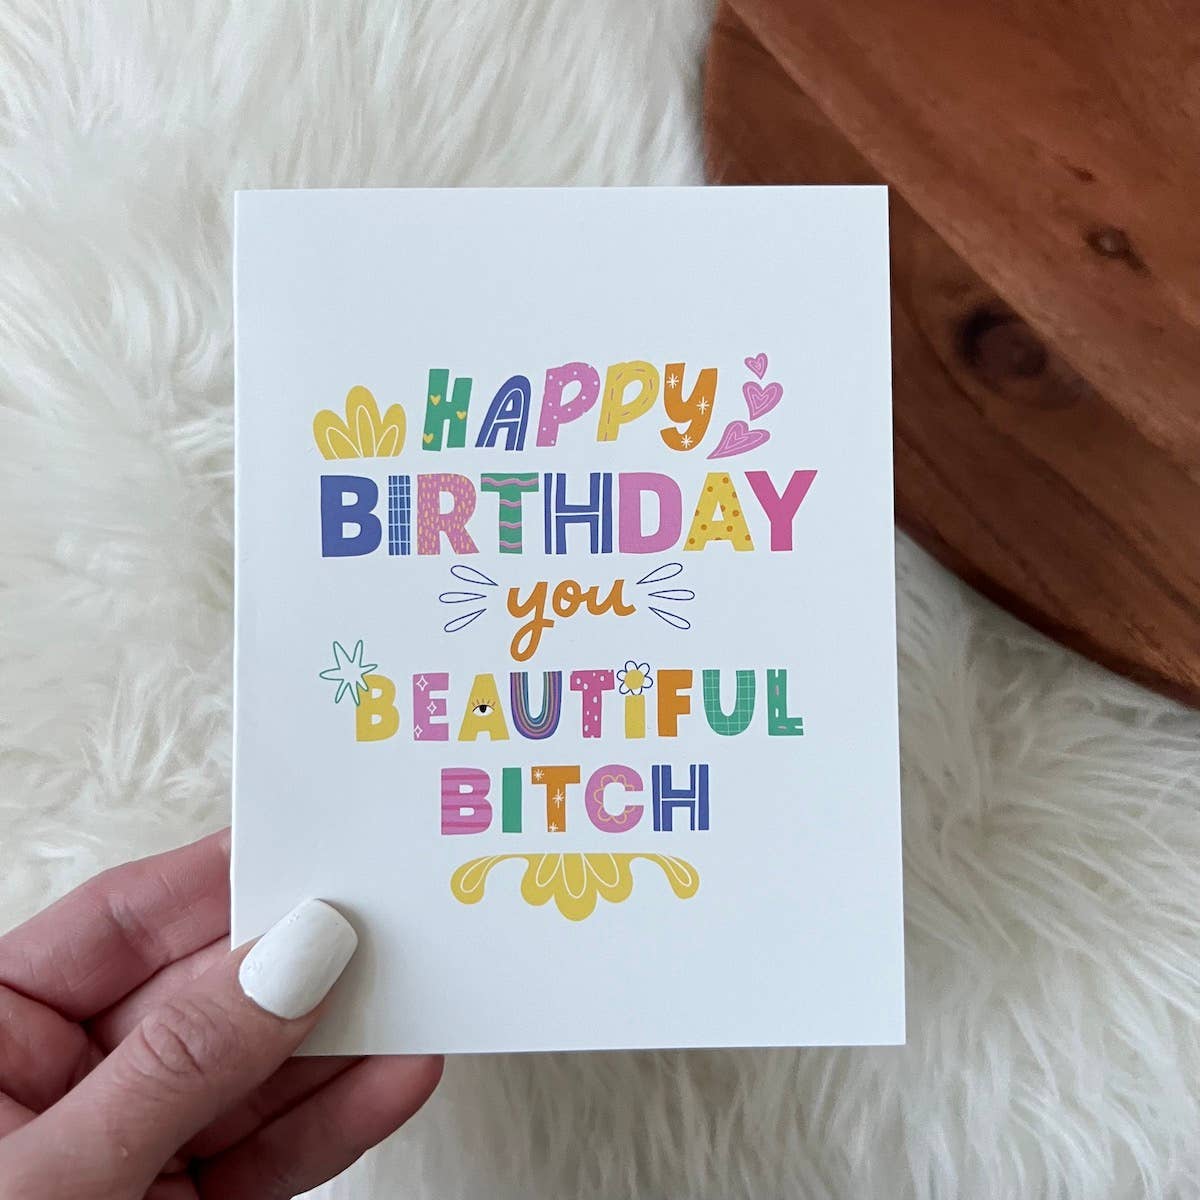 Greeting Card - Birthday: Happy Birthday You Beautiful B*tch